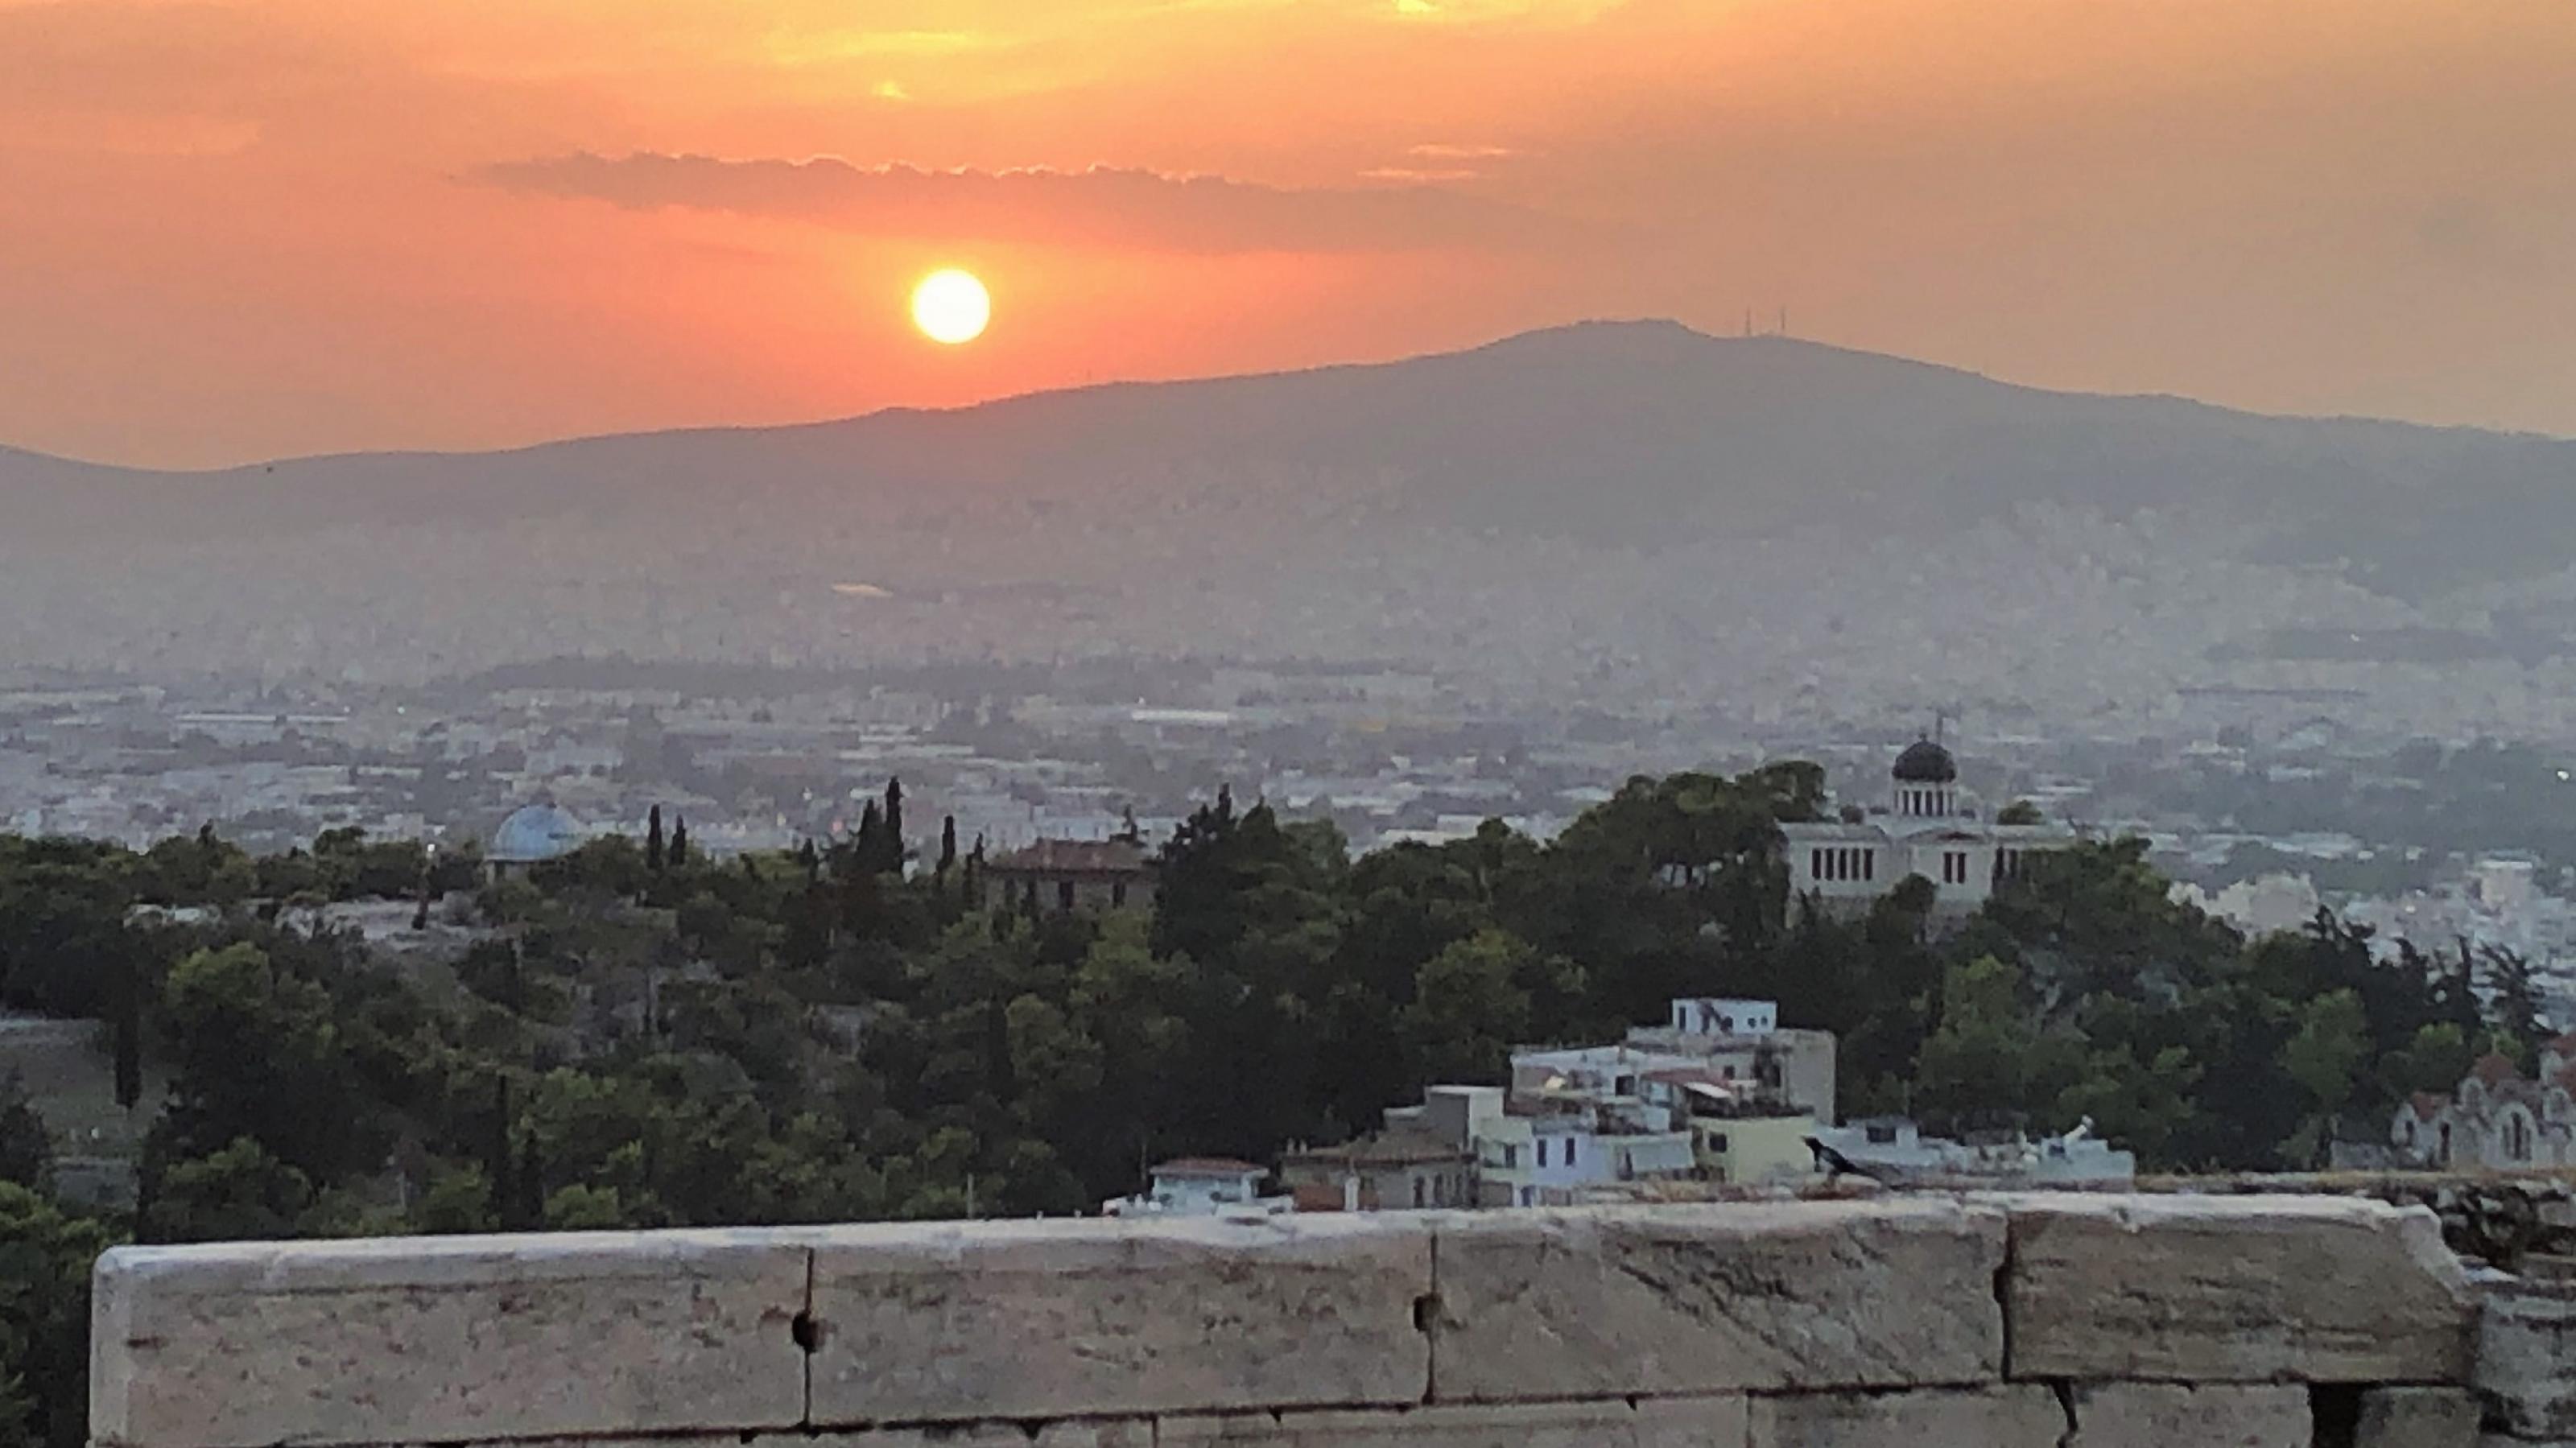 Die glühend orangene Sonne verschwindet hinter einem Hügel. Darunter das endlose Häusermeer Athens. Im Vordergrund eine Mauer der Akropolis.